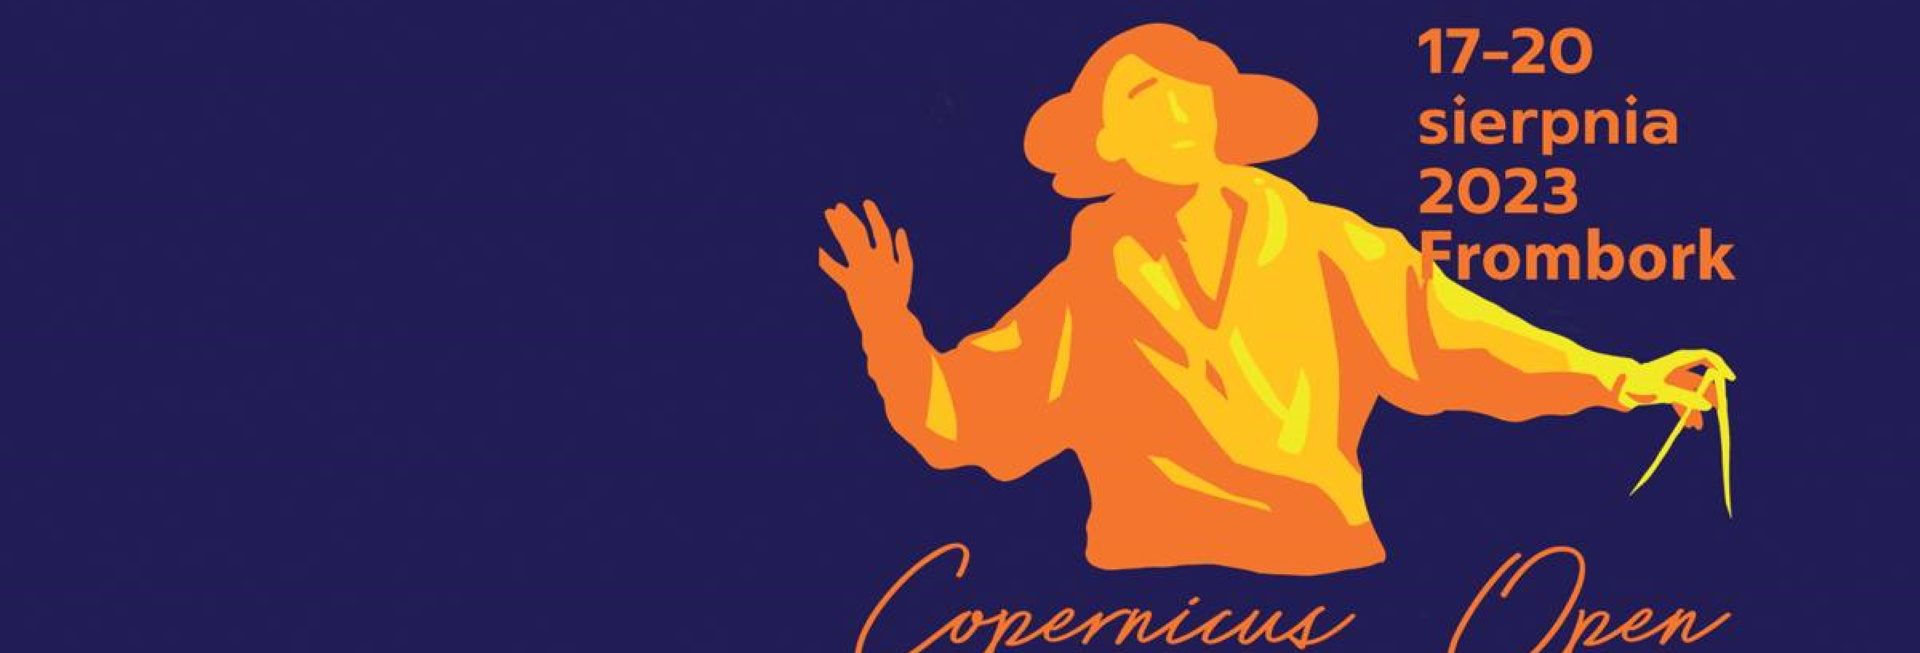 Plakat zapraszający Serdecznie w dniach 17-22 sierpnia 2023 r. do Fromborka – Grodu Kopernika na kolejną edycję Festiwalu Nauki i Sztuki Copernicus Open Frombork 2023. 